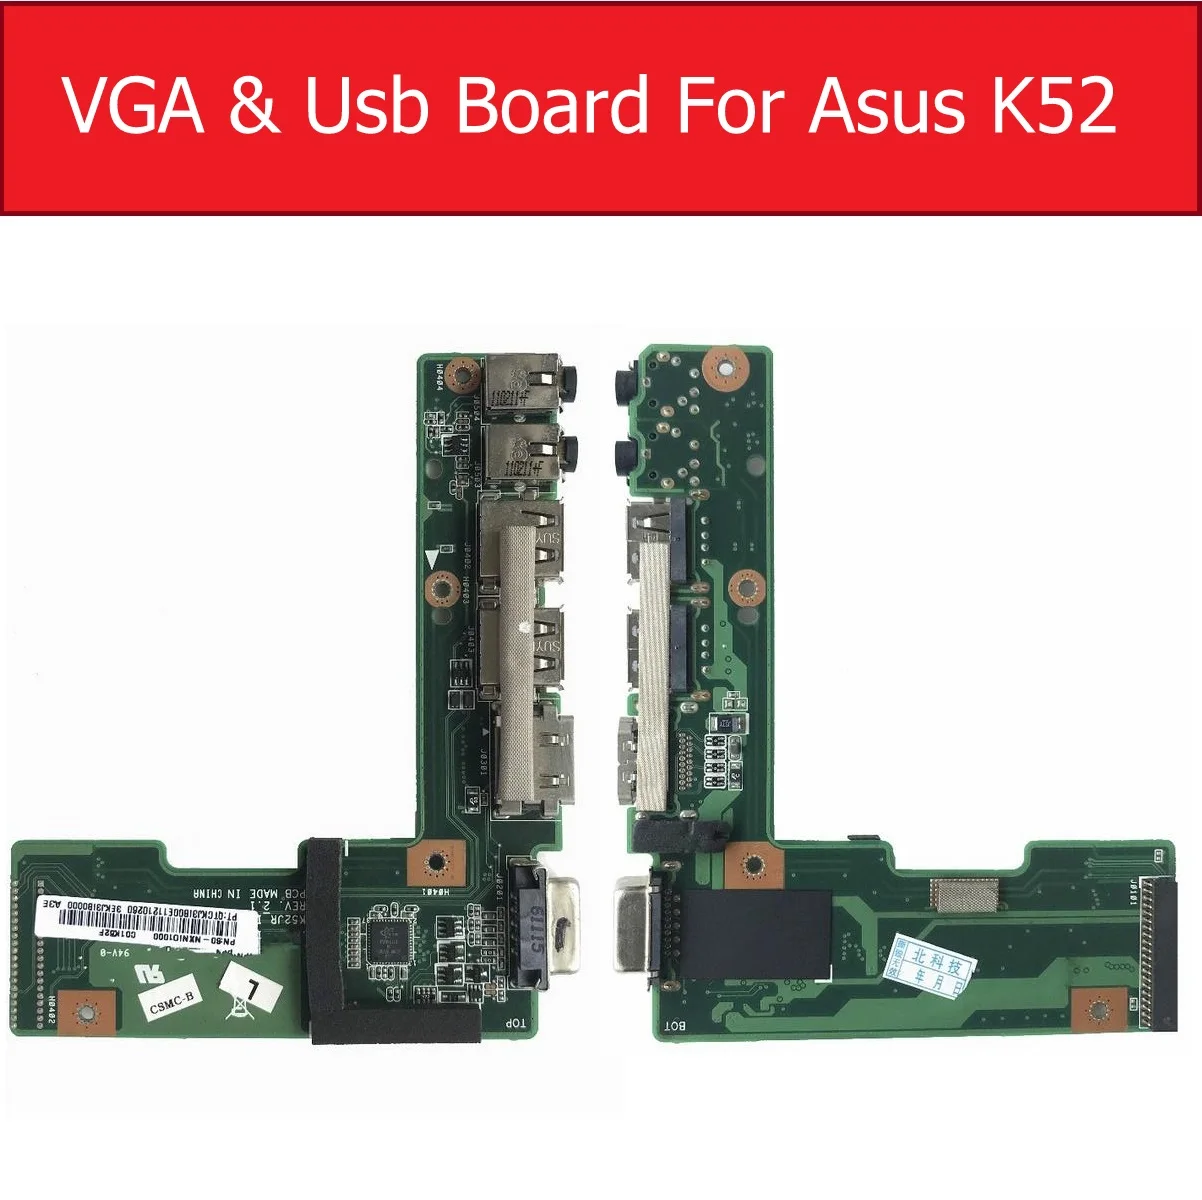 

For ASUS K52 X52J A52J K52J K52JR K52JT K52JB K52JU K52JE K52D X52D A52D K52DY K52DE K52DR Audio VGA&USB IO Board DC Power Board